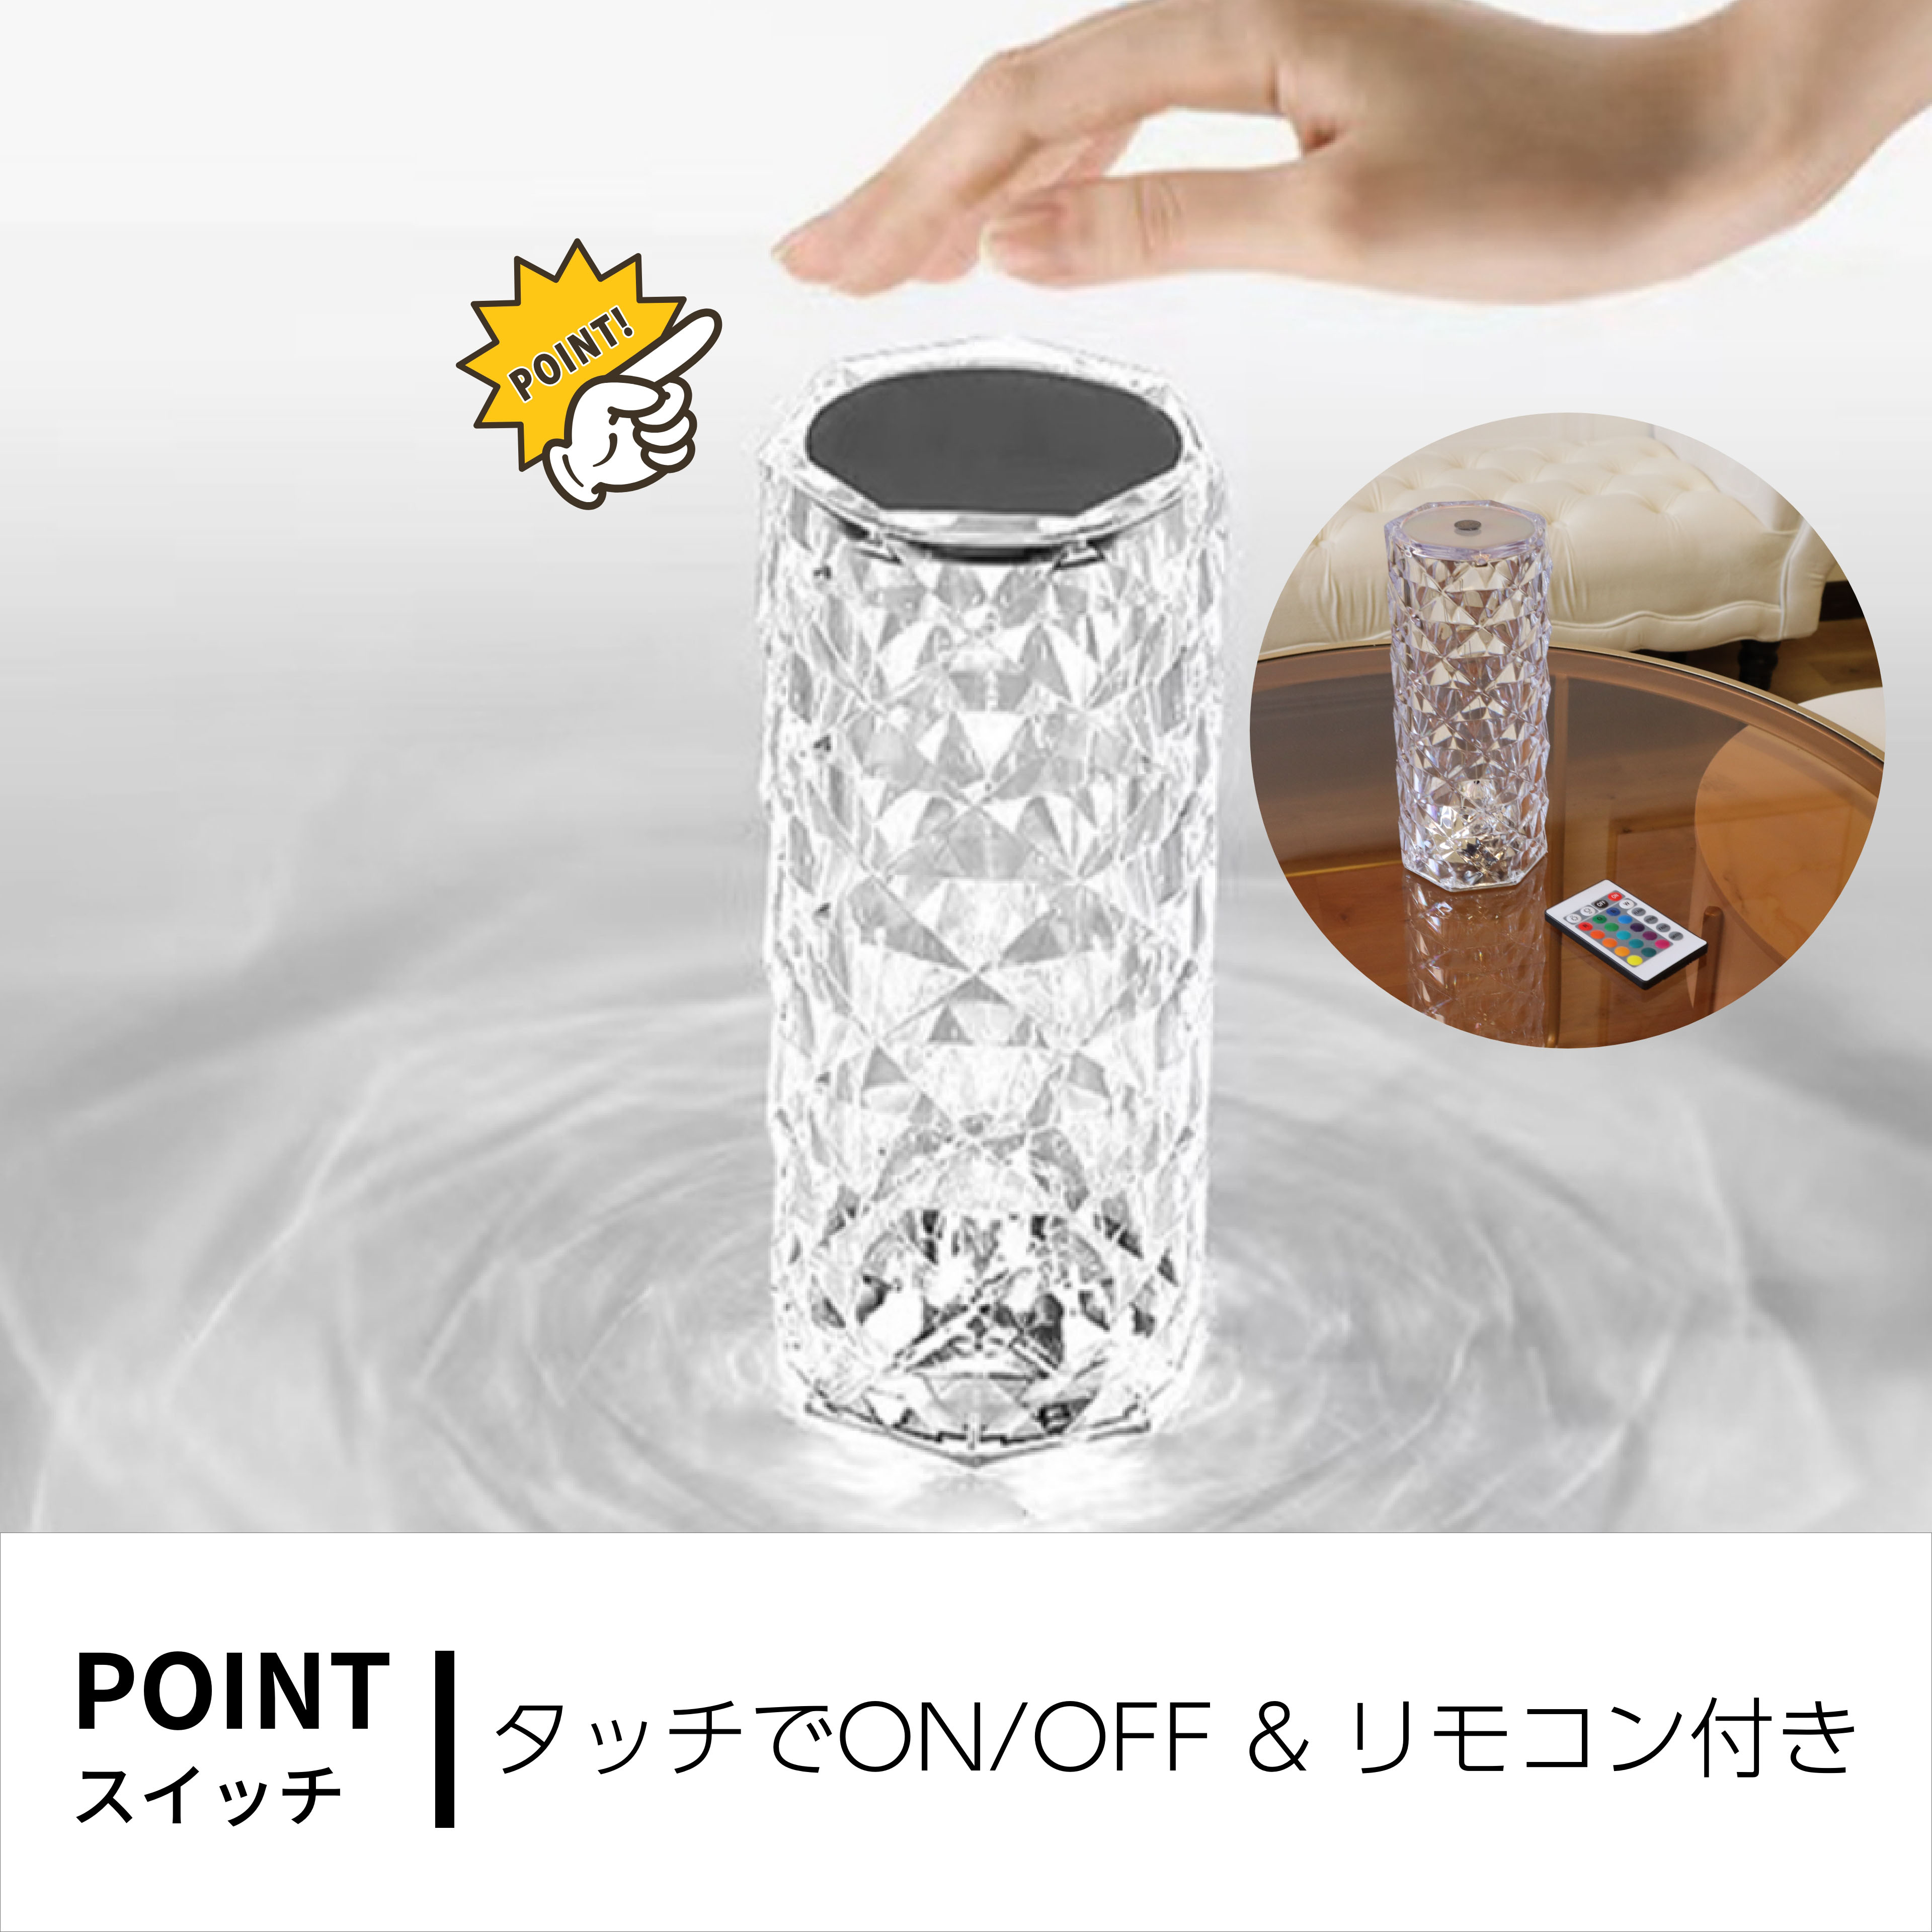 楽天市場テーブルライト 充電式 韓国 クリスタル ダイヤモンド 照明